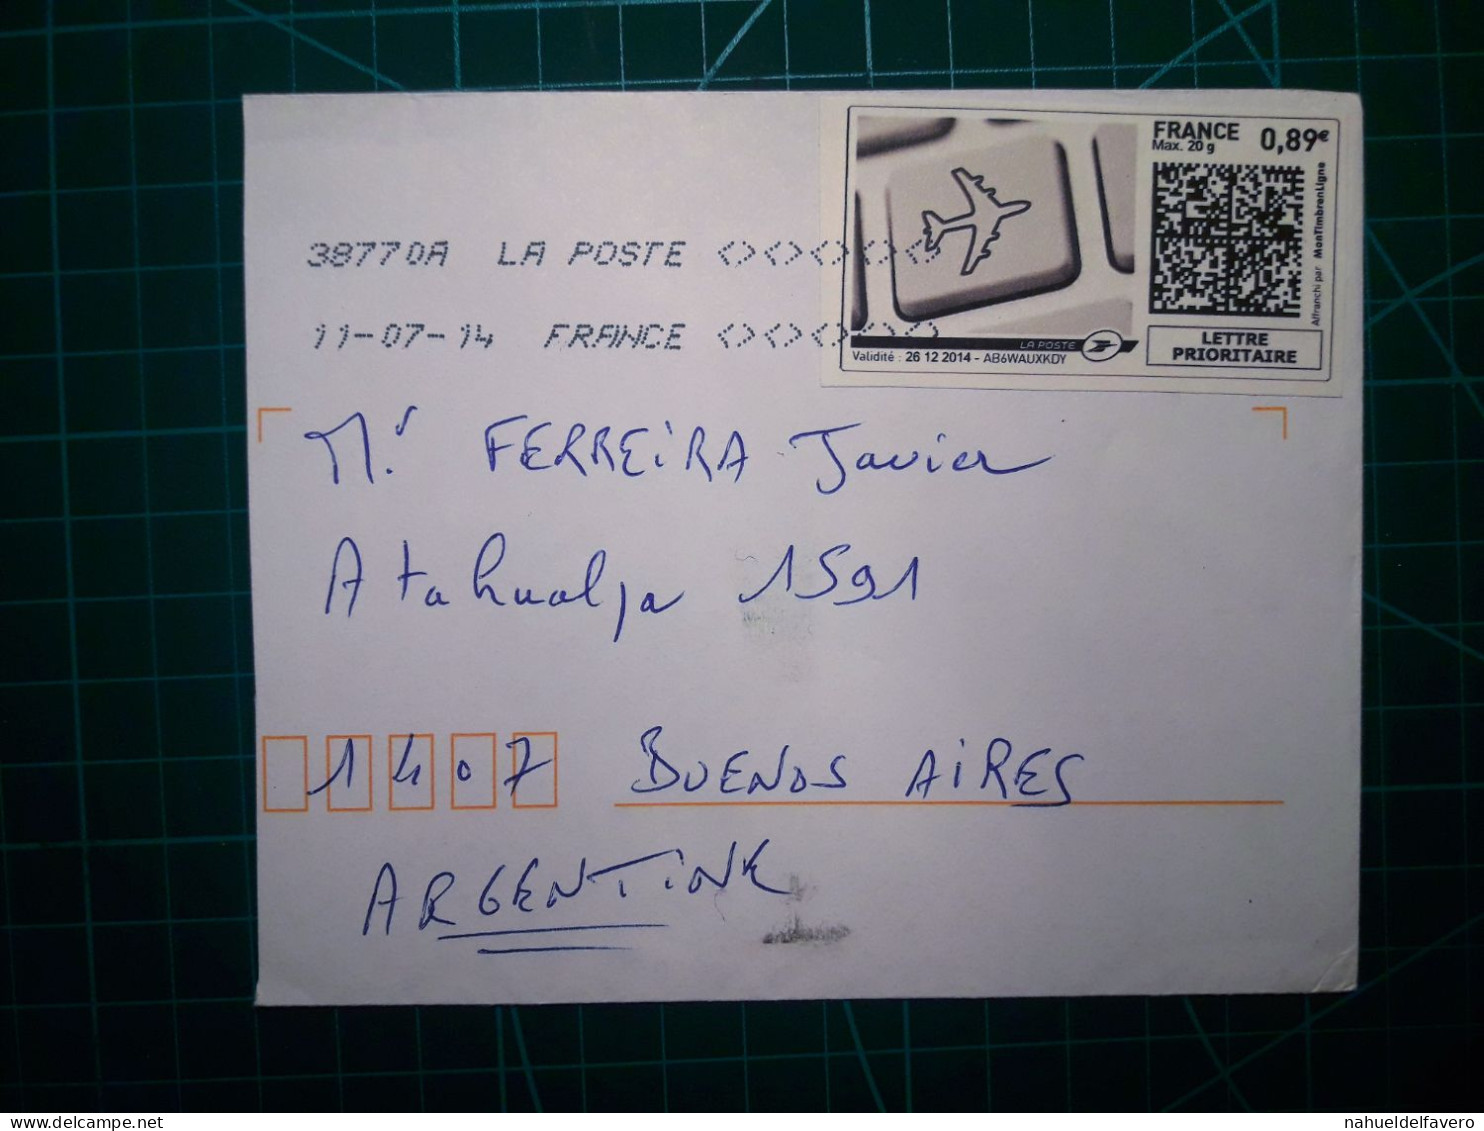 FRANCE, Enveloppe Envoyée à Buenos Aires, Argentine Avec Cachet Numérique Et Code QR. Année 2007. - Used Stamps